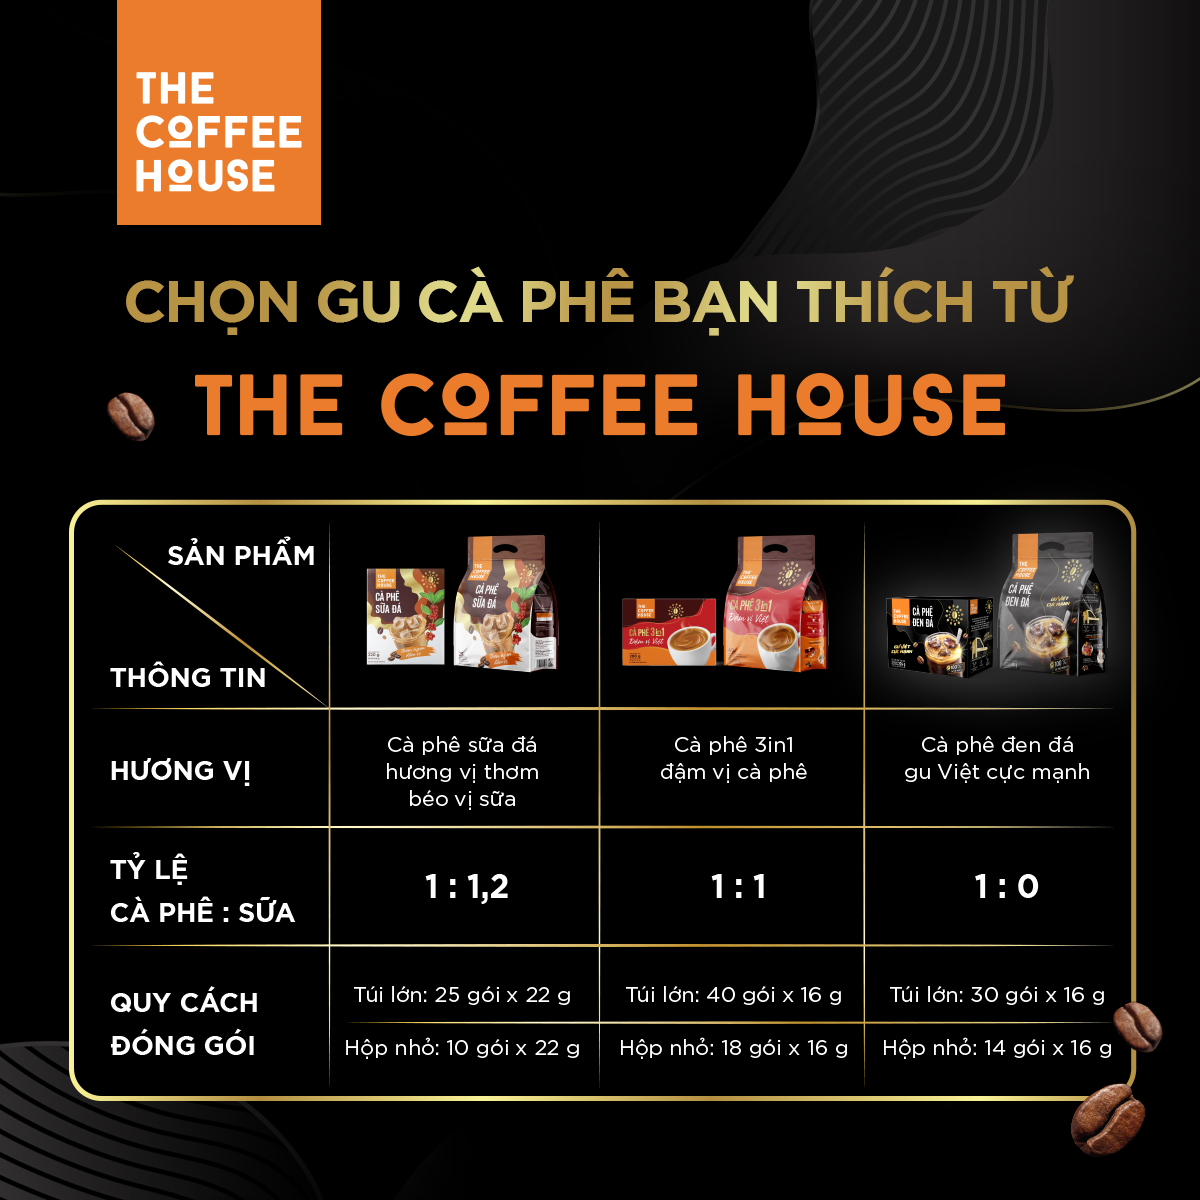 [MUA 3 TẶNG 1] Hộp cà phê đen đá The Coffee House (Hộp 14 gói x 16 g)